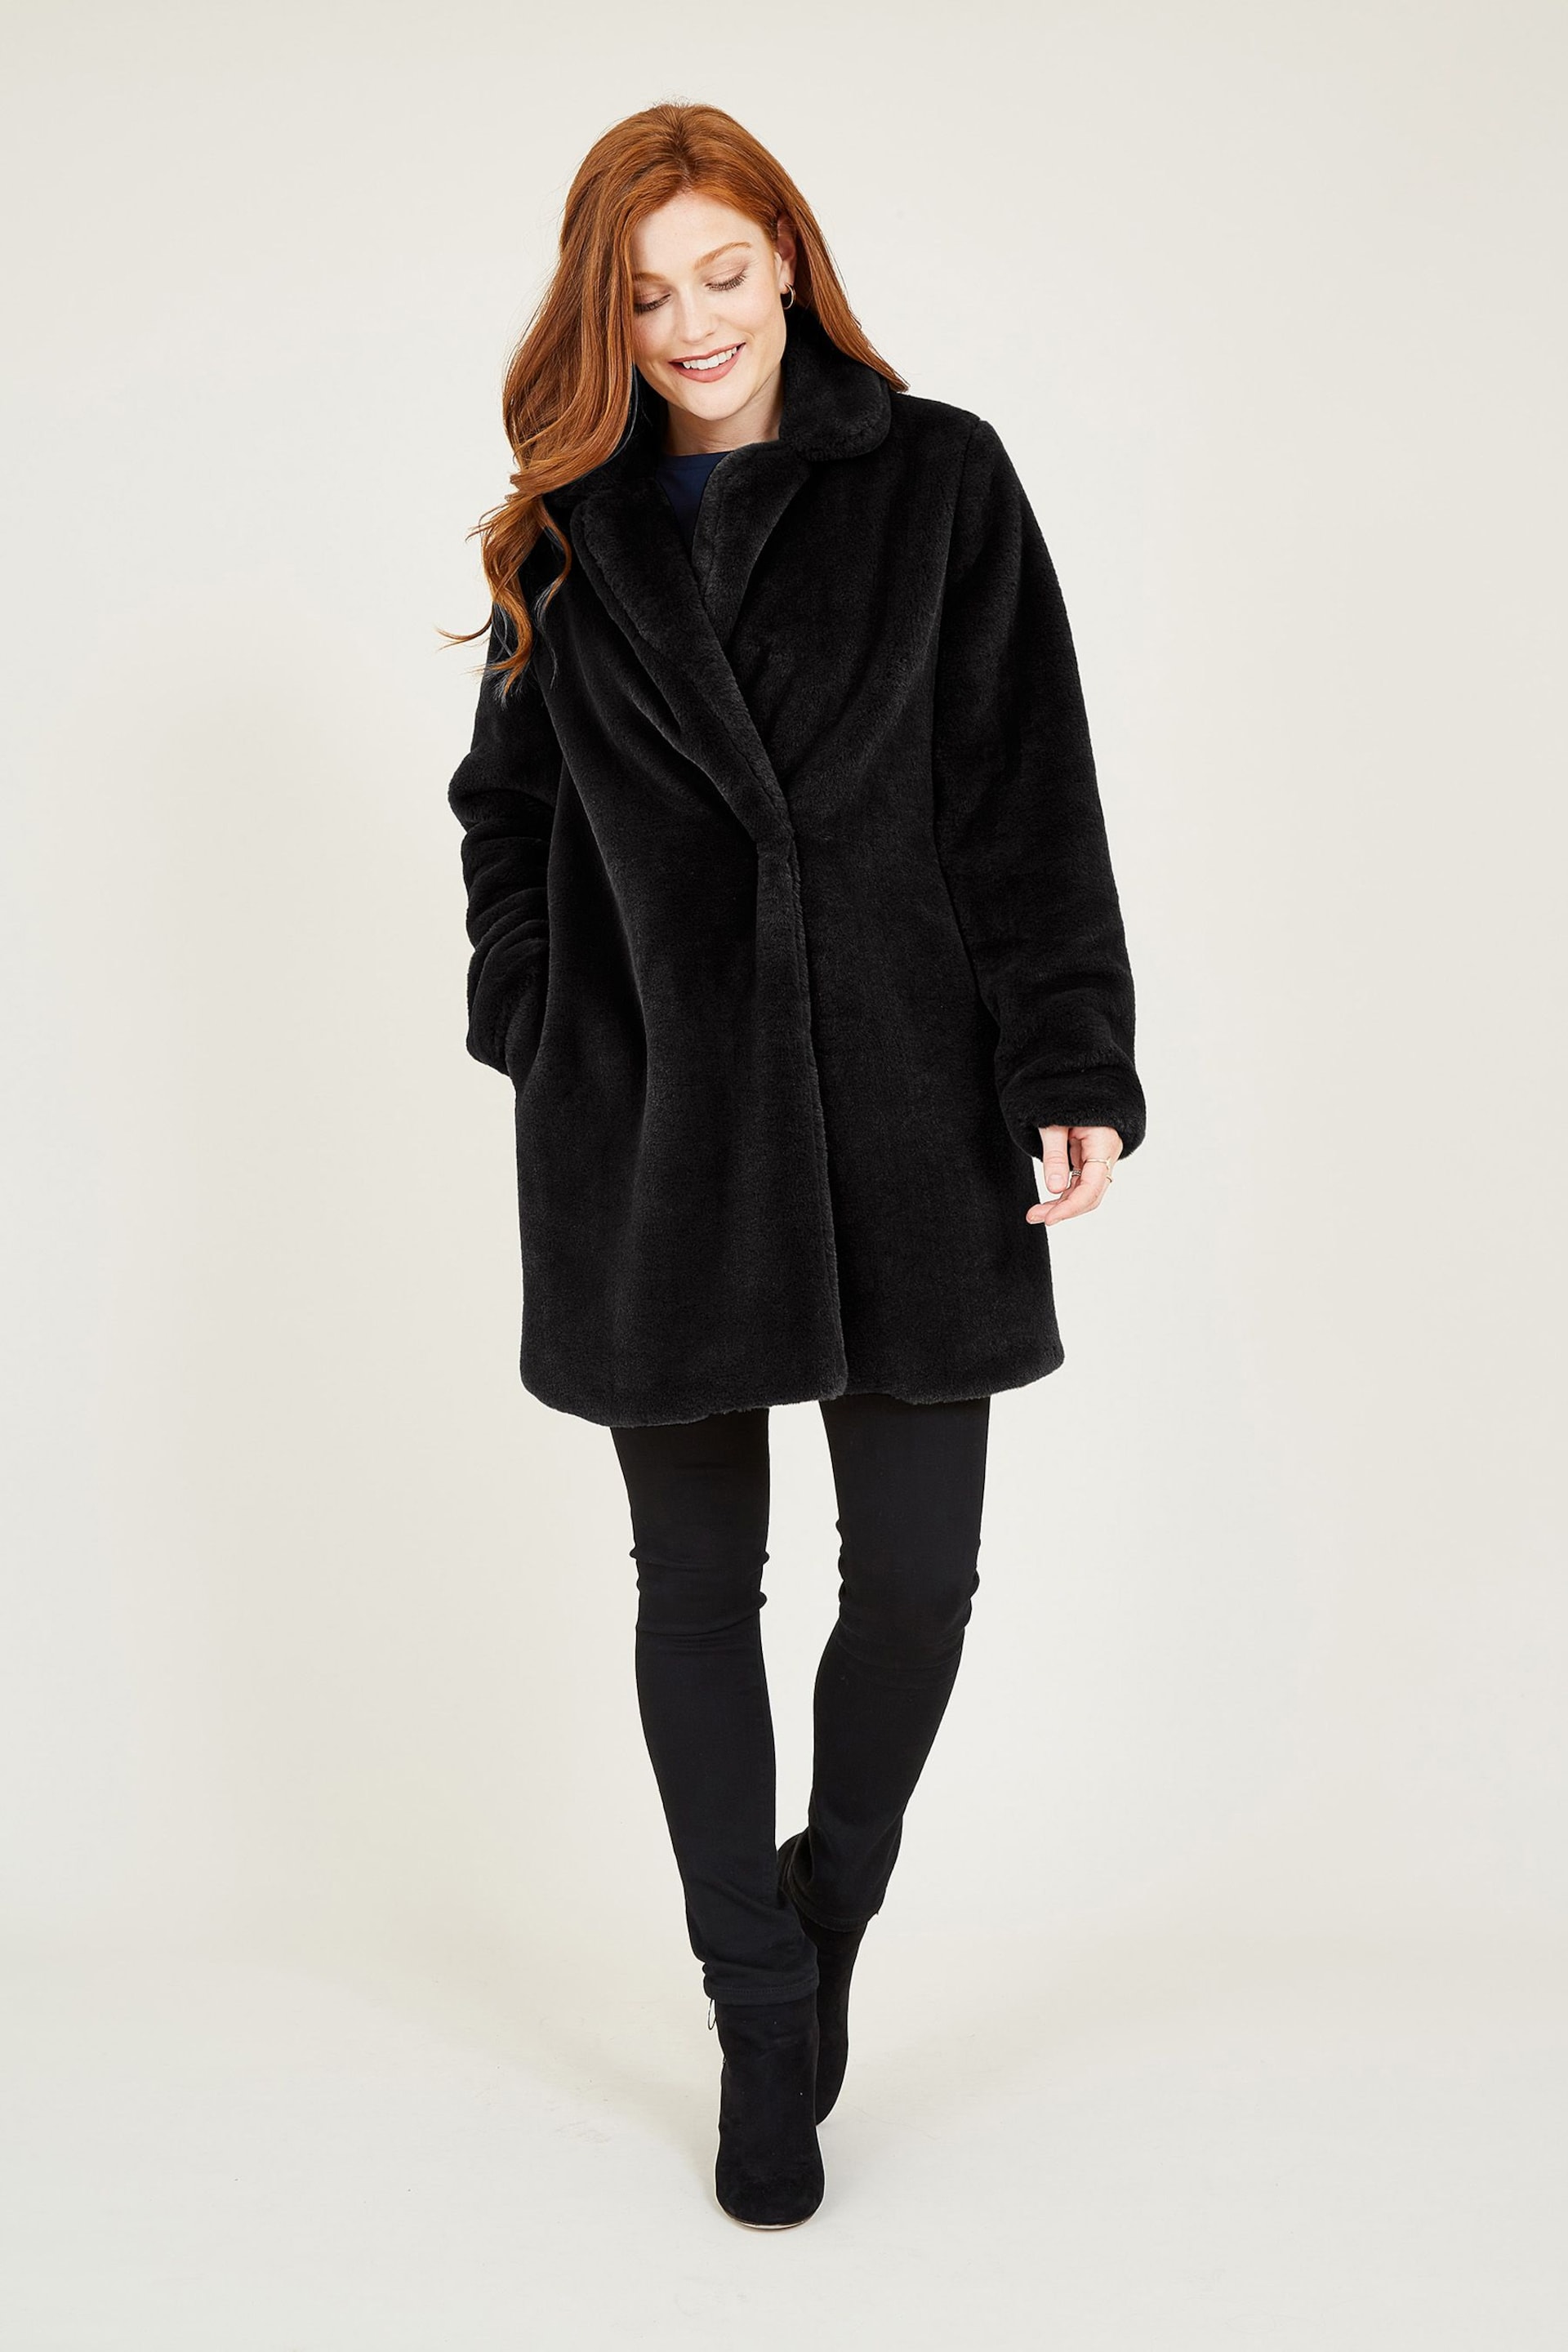 Yumi Black Faux Fur Coat - Image 3 of 5